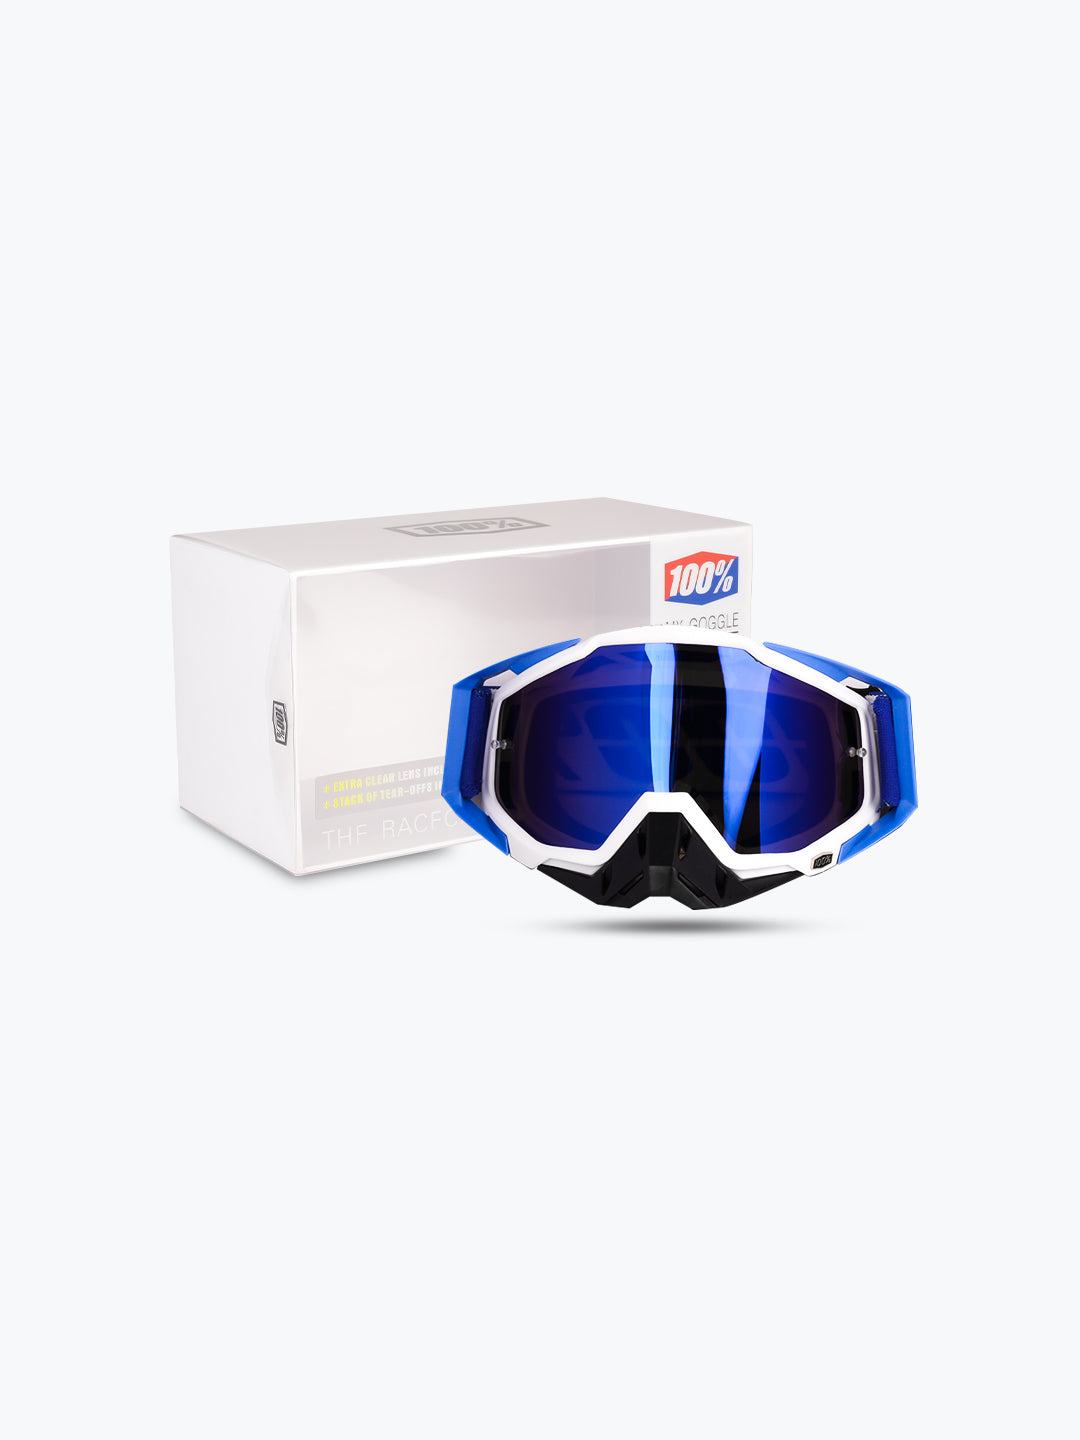 100% Goggles Blue Black Blu Tint